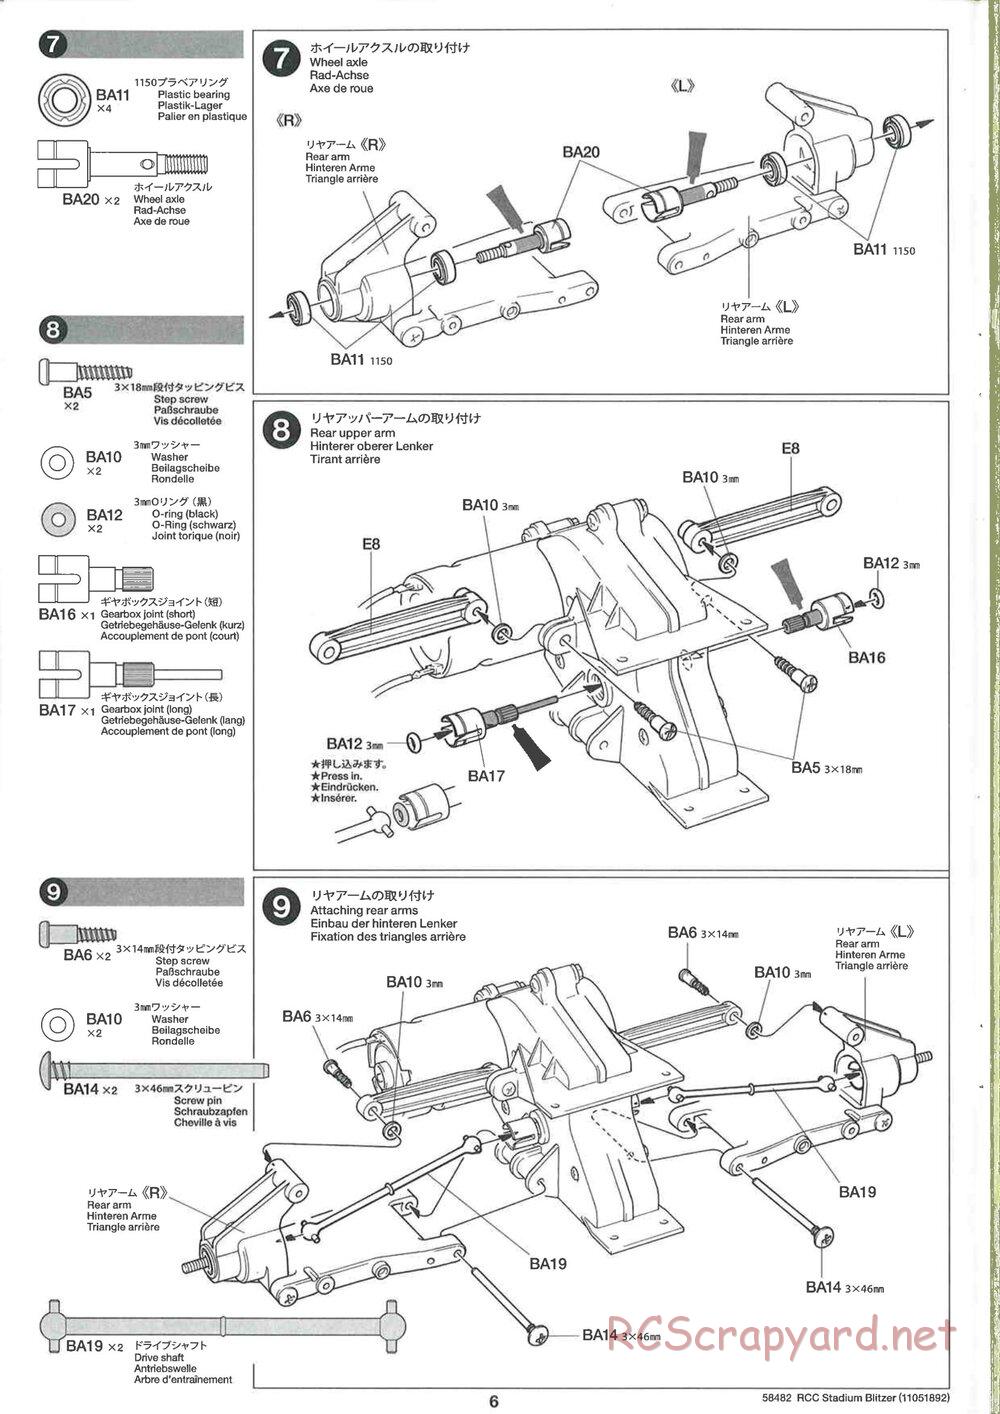 Tamiya - Stadium Blitzer 2010 - FAL Chassis - Manual - Page 6